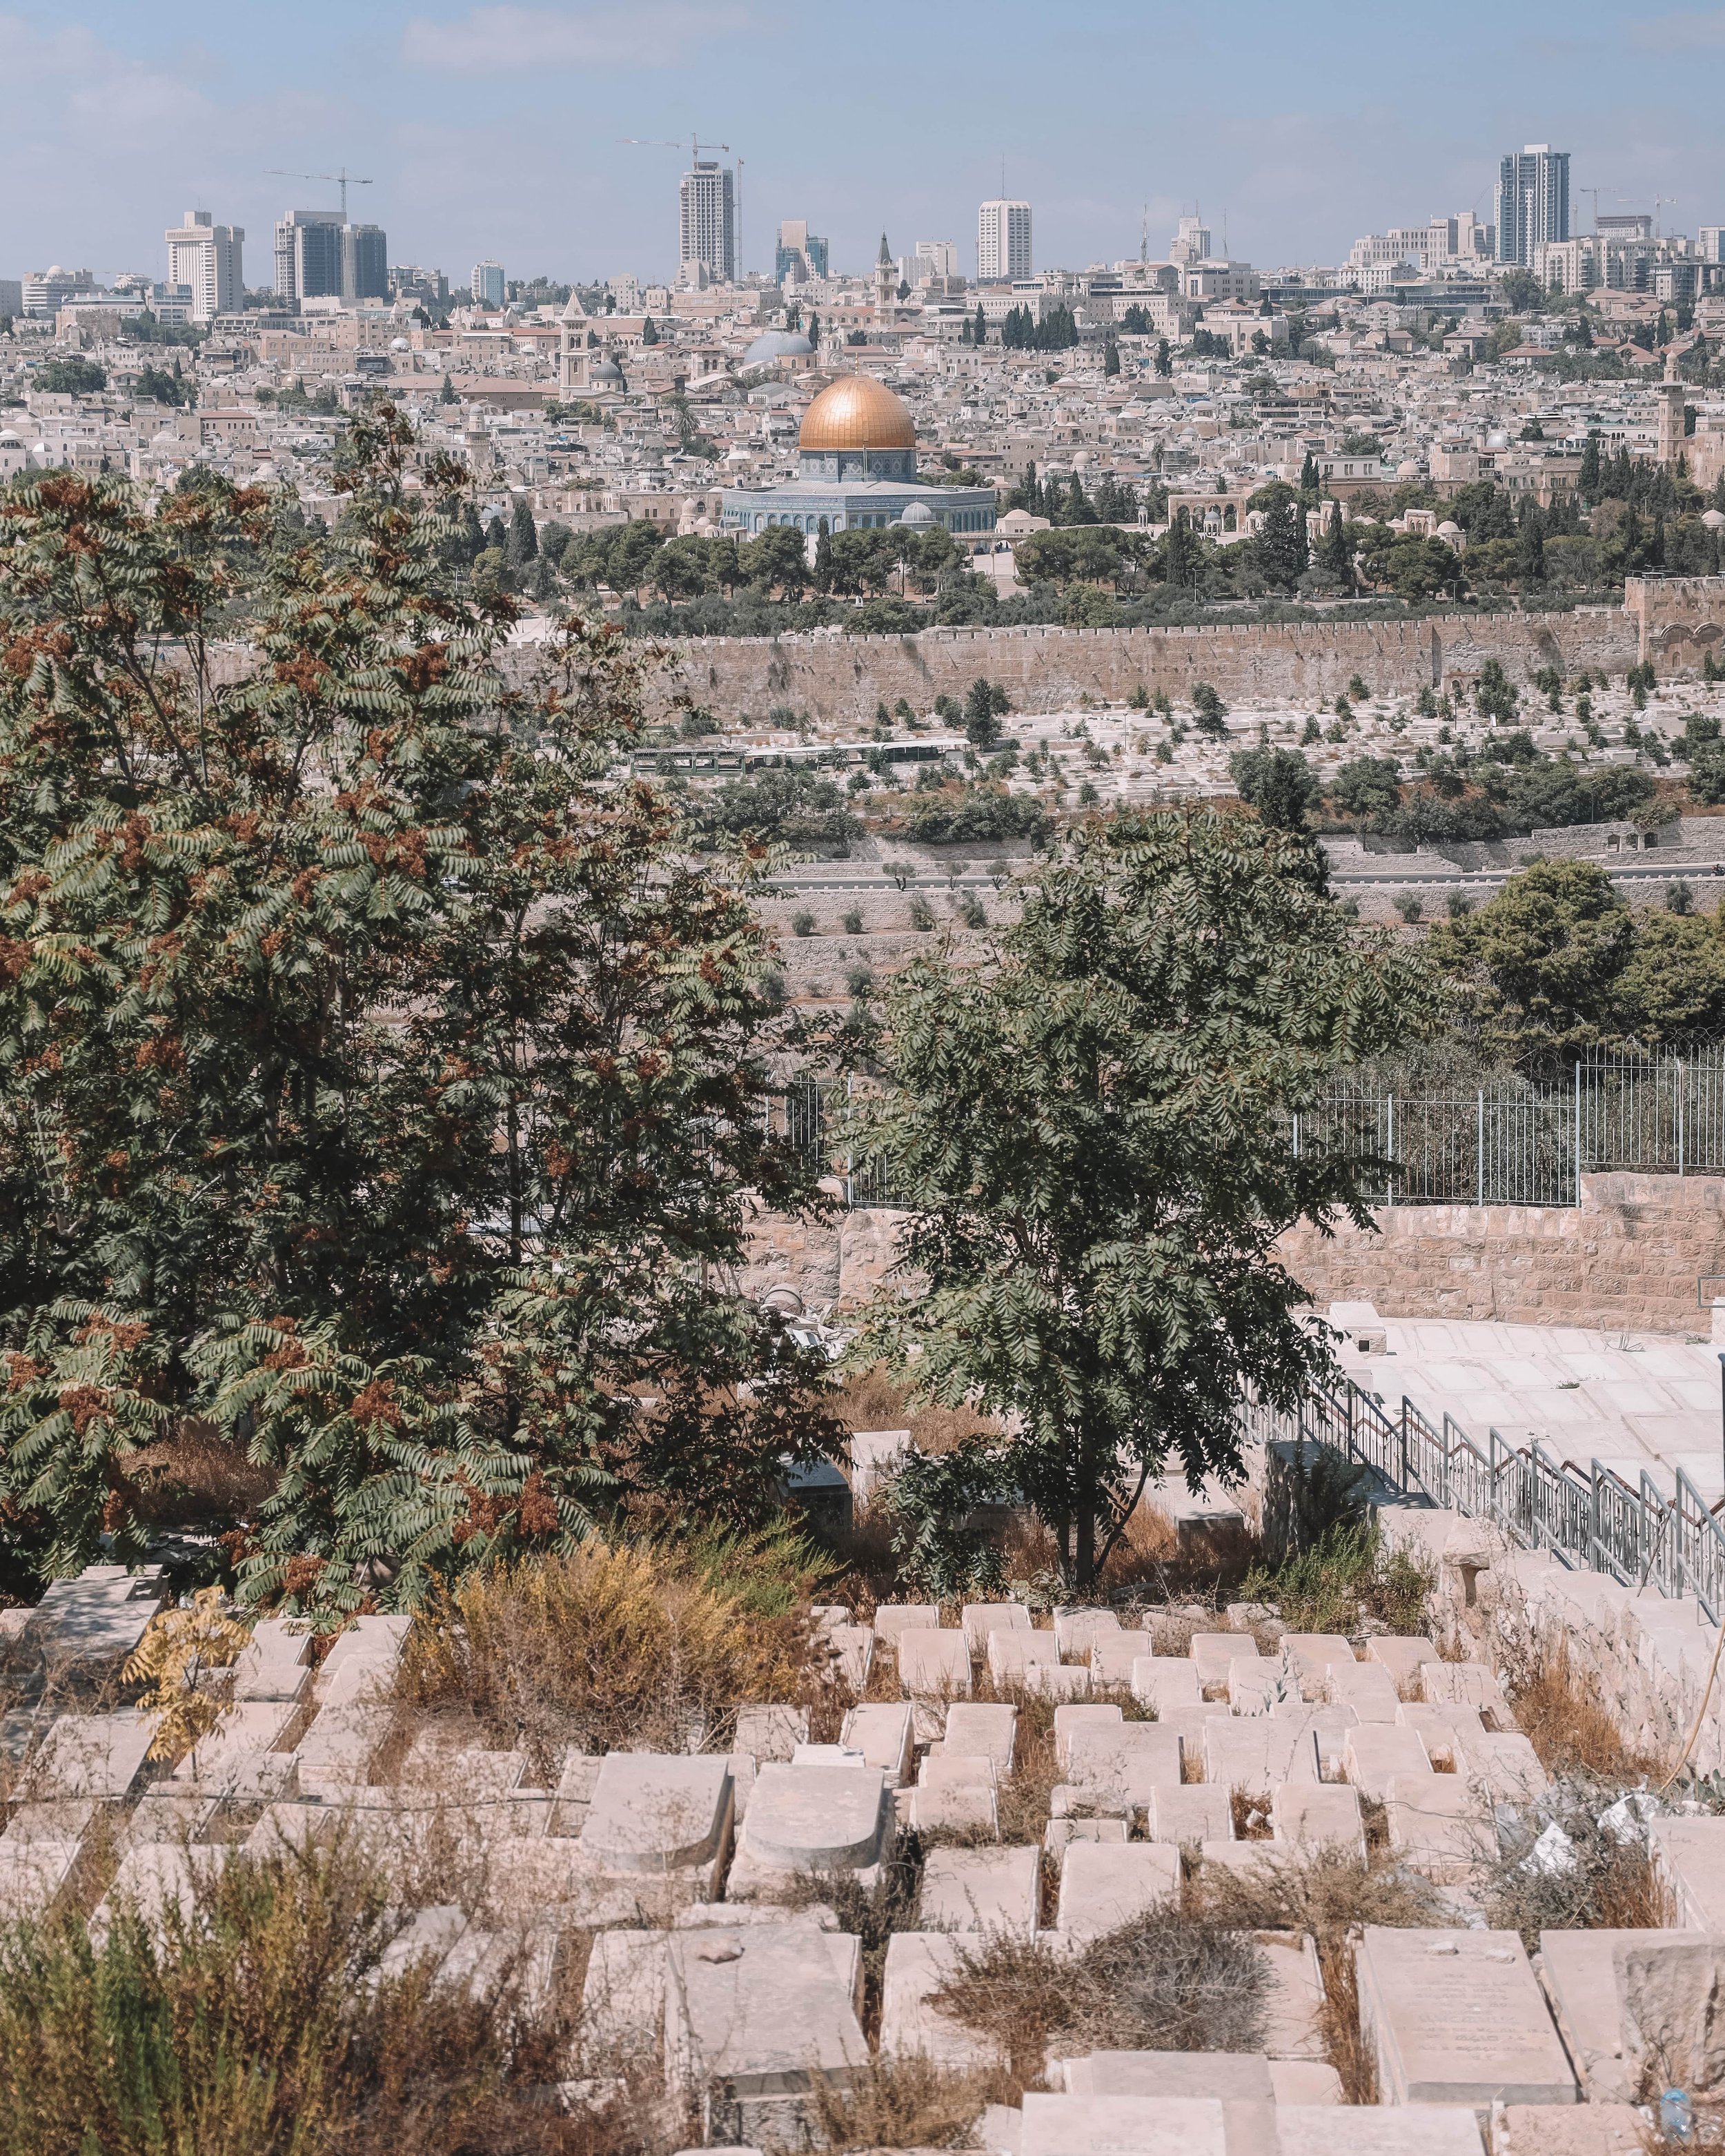 Une partie du cimetière et le dôme du rocher avec la ville au loin - Vieille Ville - Jérusalem - Israël